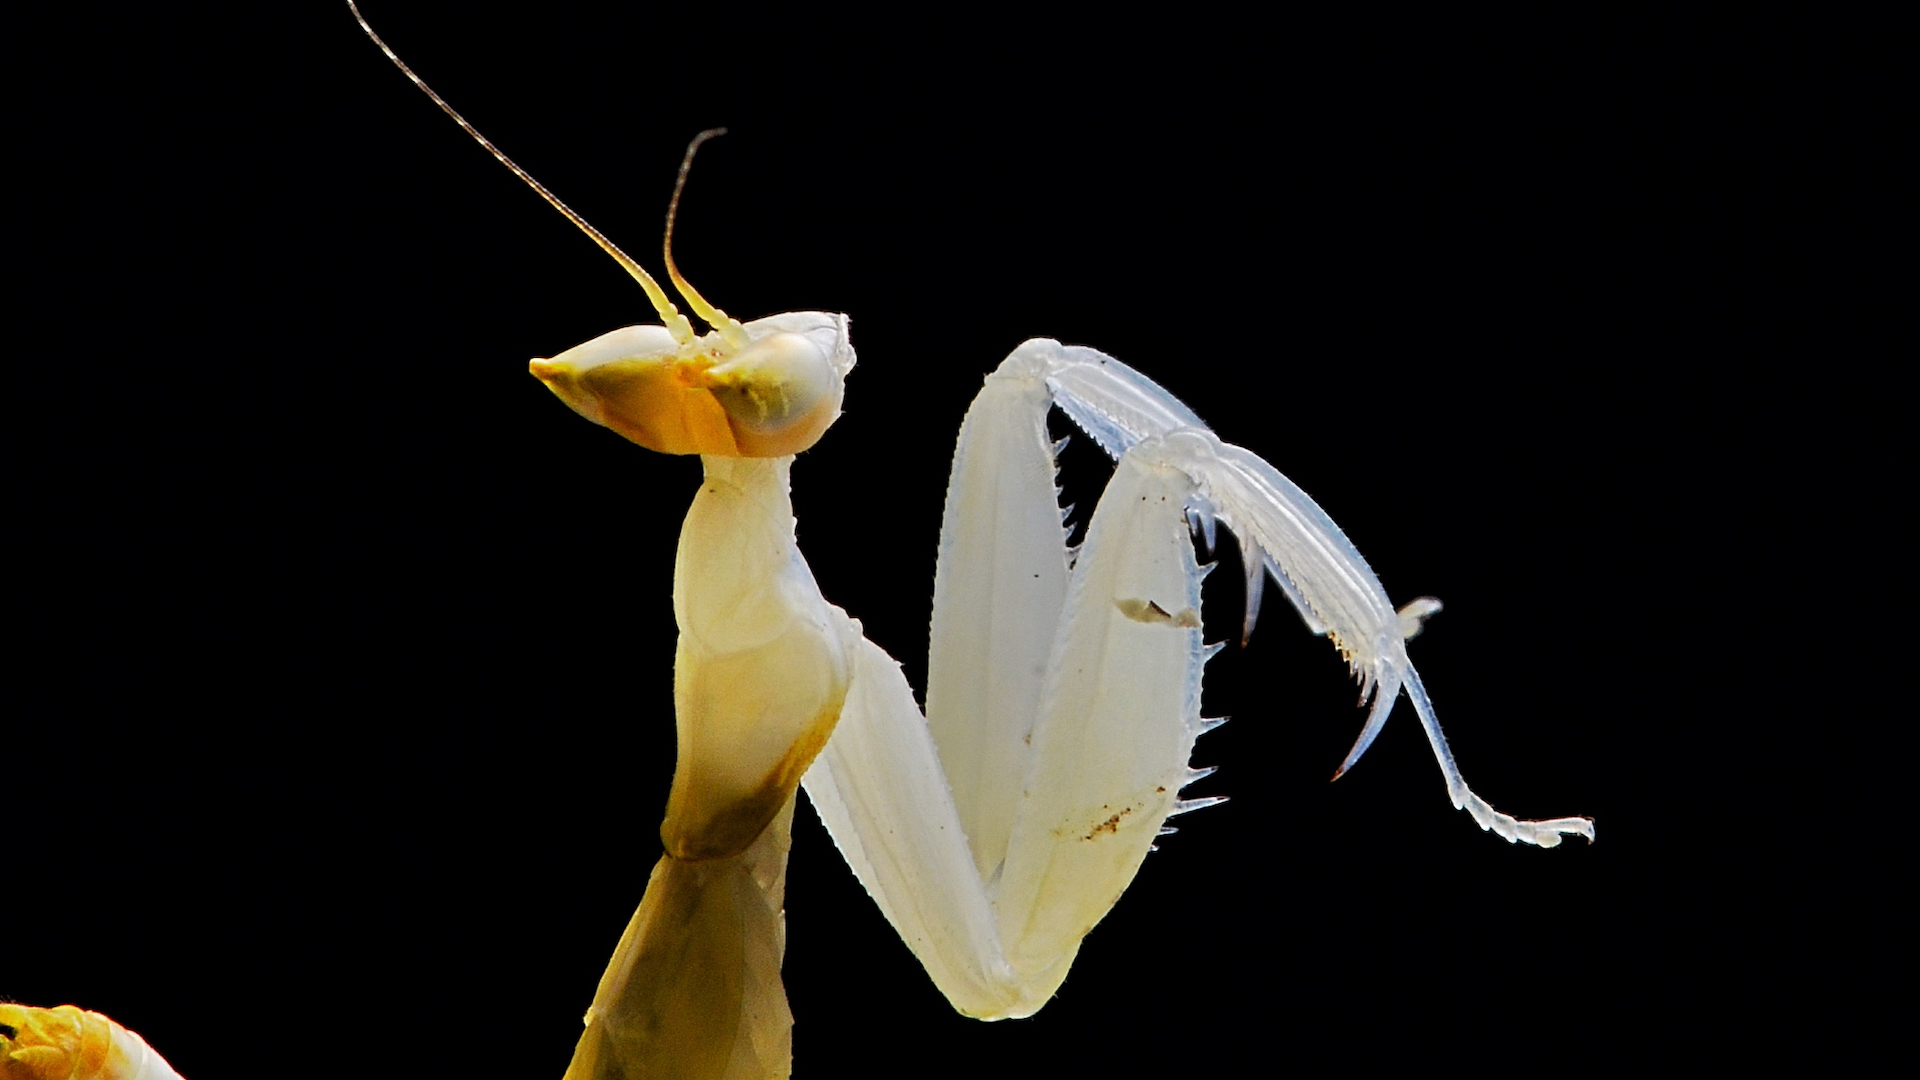 Orchid Praying Mantis